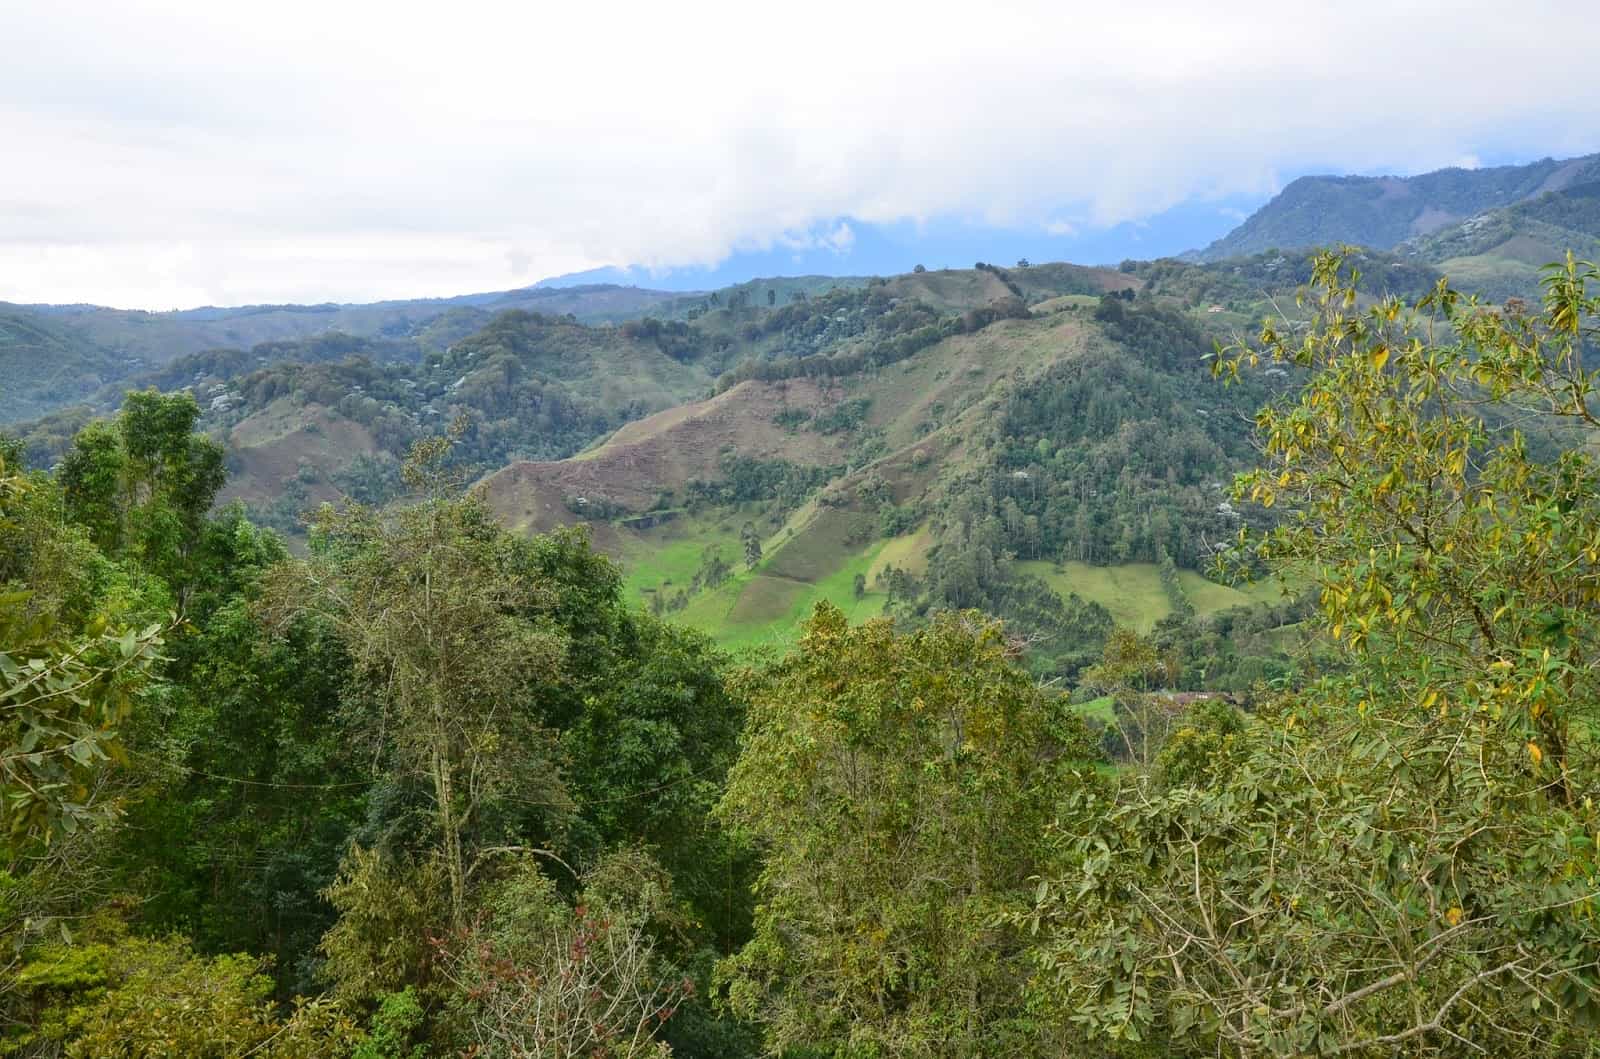 View from Alto de la Cruz in Salento, Quindío, Colombia